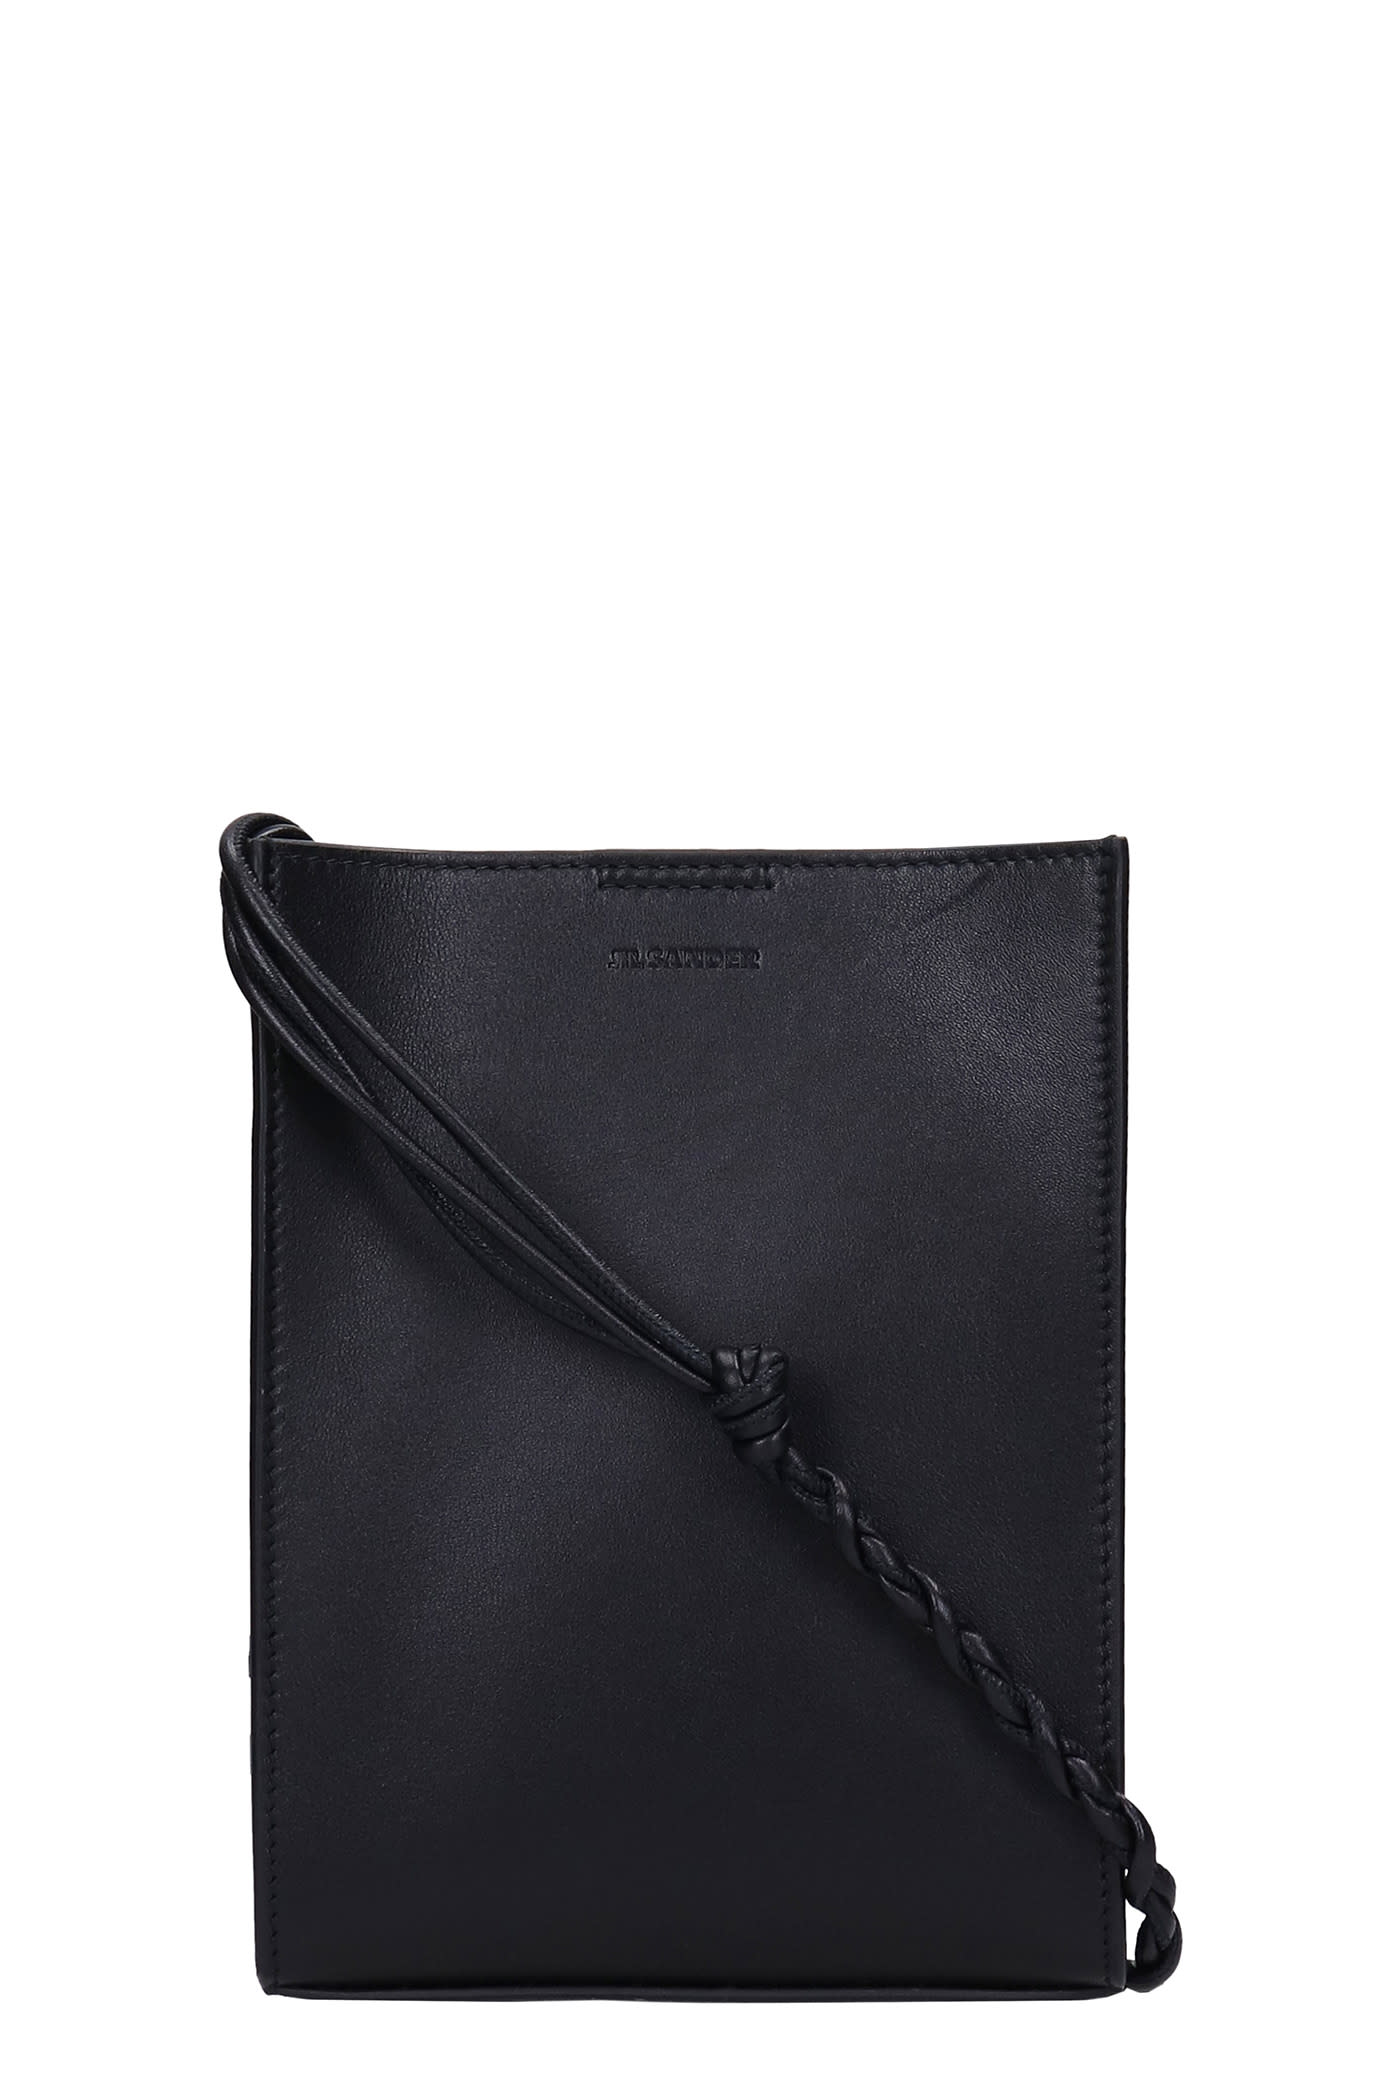 Jil Sander Tangle Sm Shoulder Bag In Black Leather